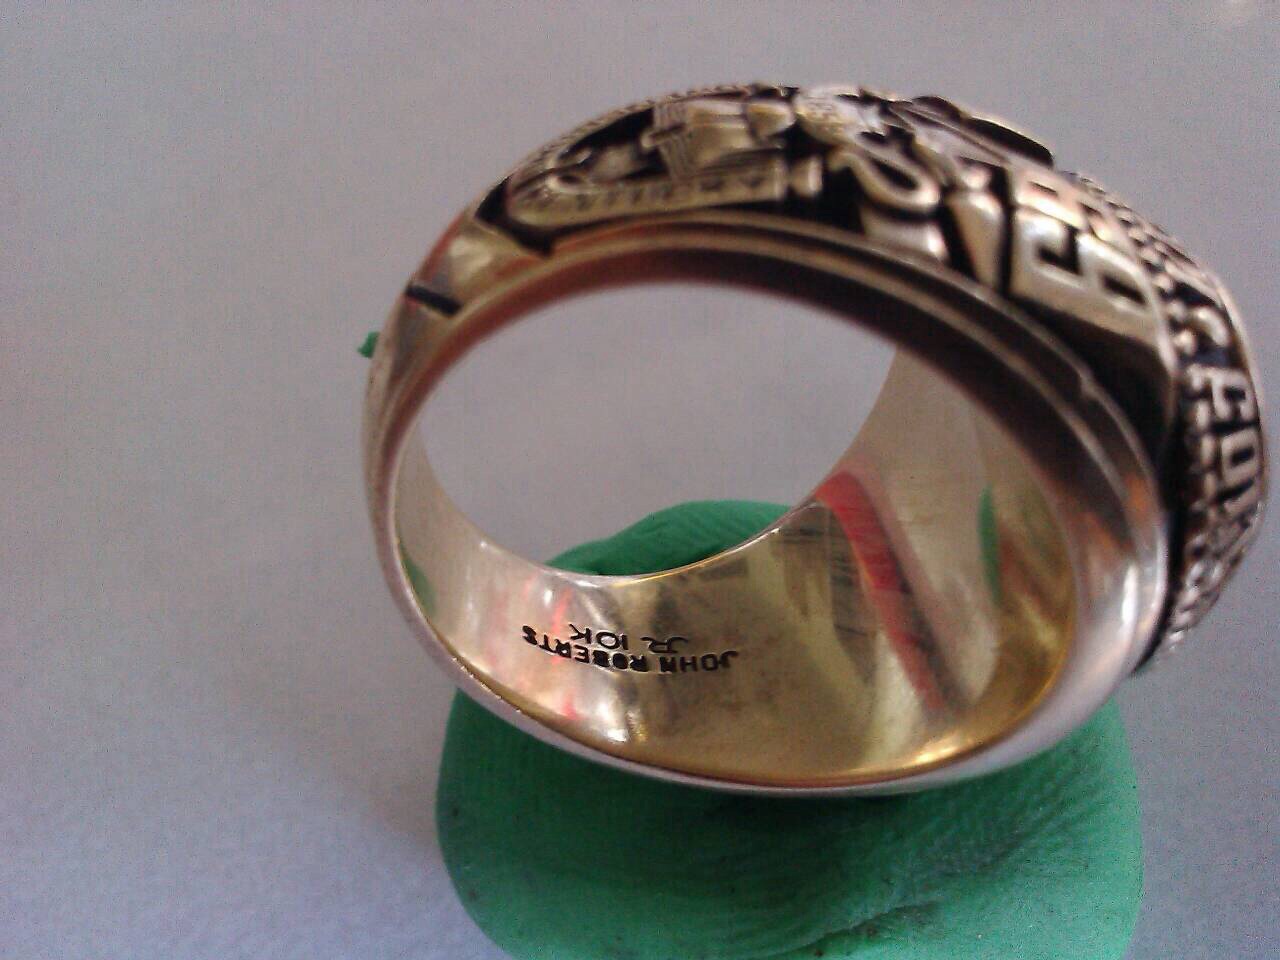 ขายแหวนรุ่นทอง 10 เค แหวนนอกทองแท้ เคาะเดียว 15000 บาท